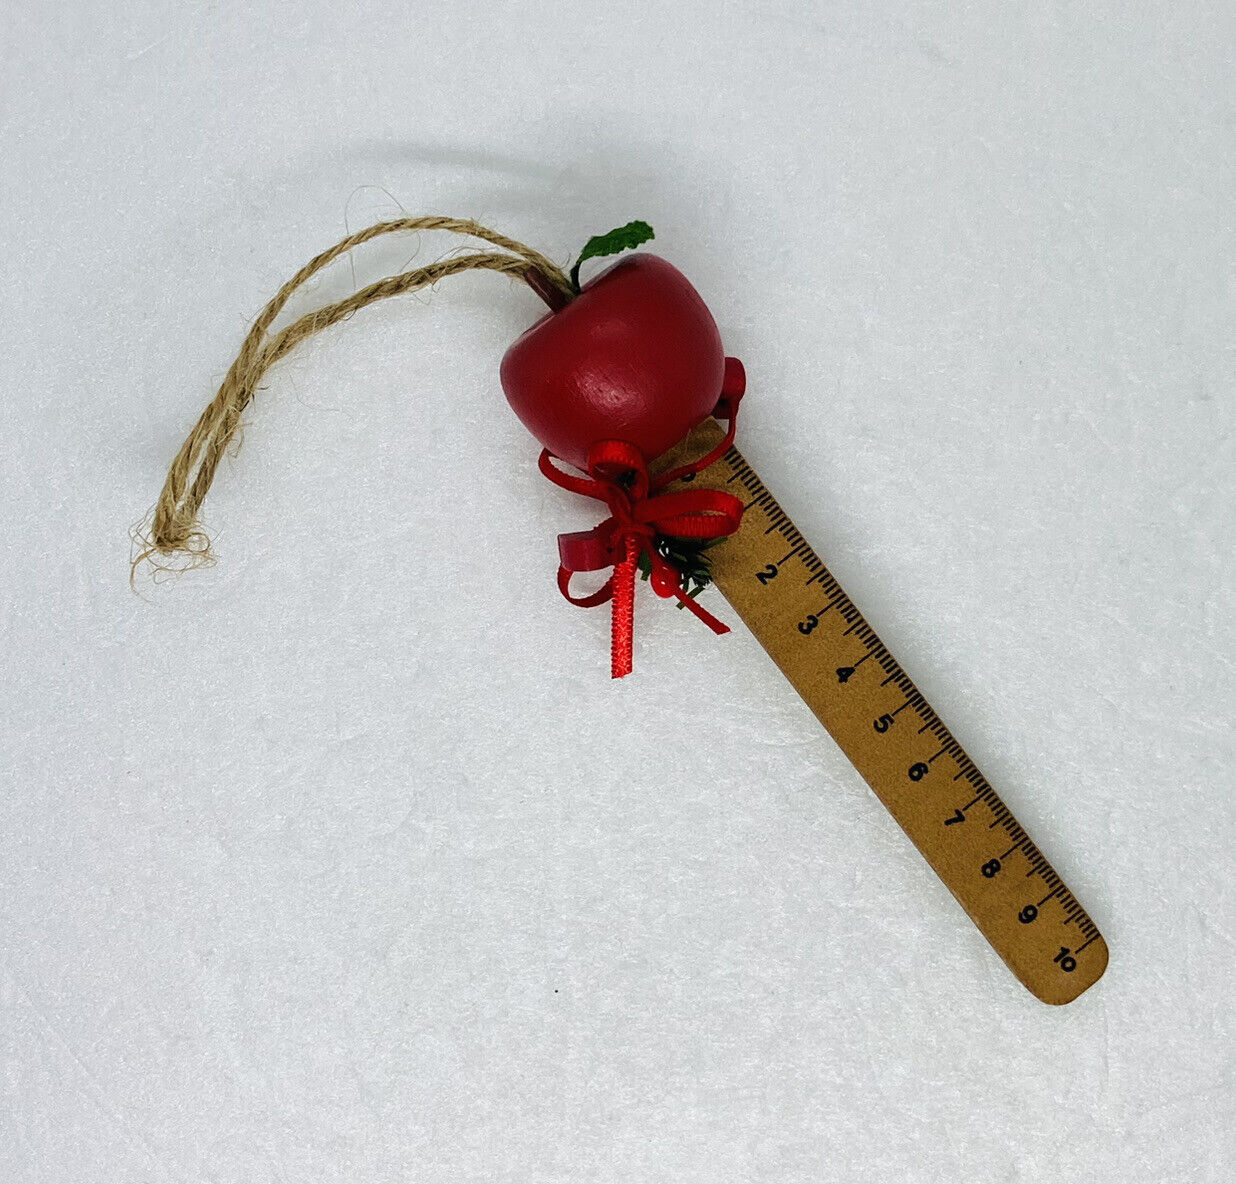 Vintage 1980s Wooden Christmas Ornament Teacher’s Apple Ruler Art Decor 20